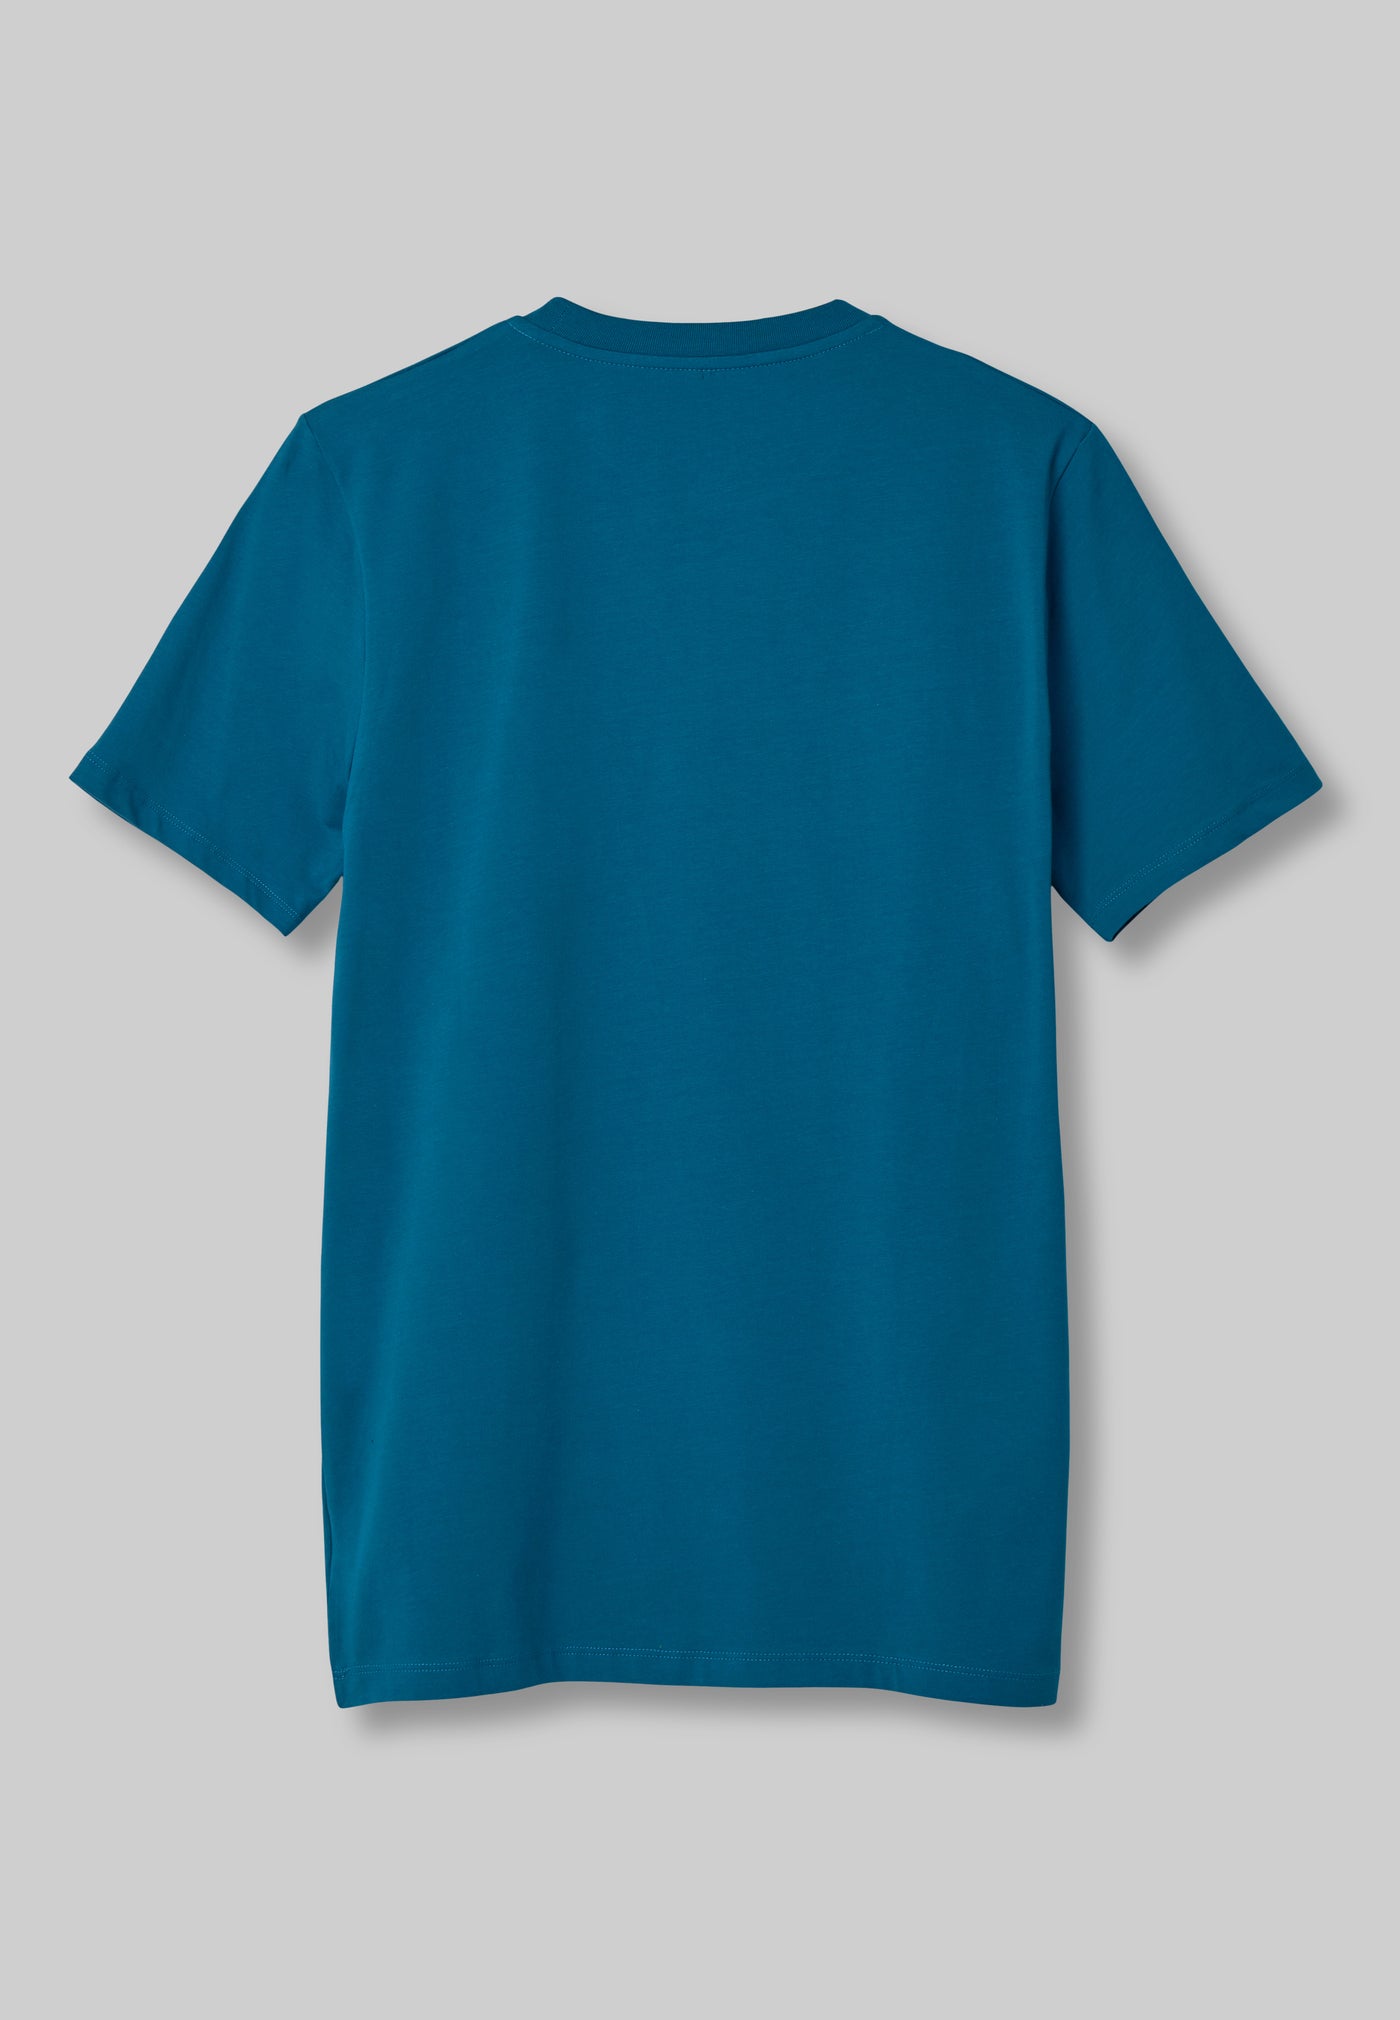 FirstGrade "GRAFFITI" T-skjorte - Azurblå